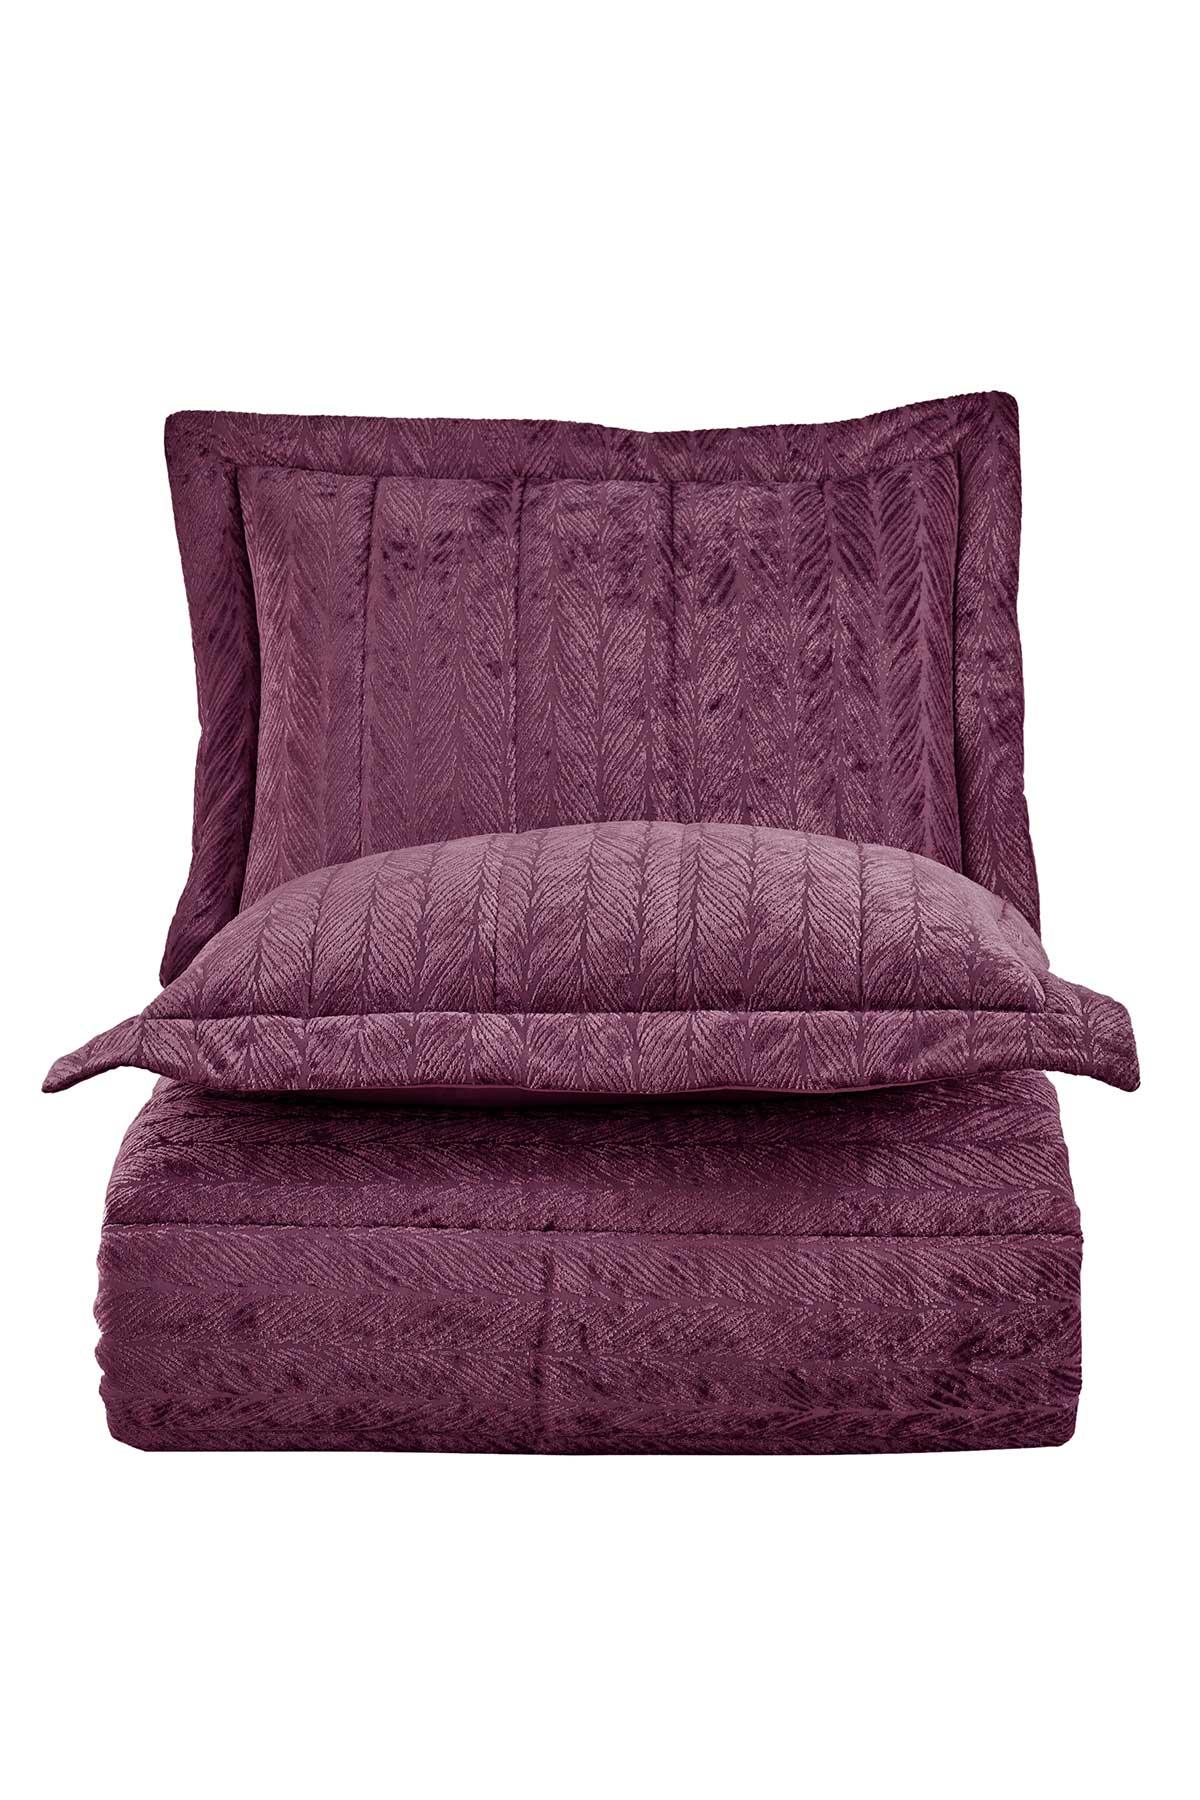 Velvet Kadife Comfort Set Modern Uyku Seti Tek Kişilik Mürdüm 2 Parça - Elart Home